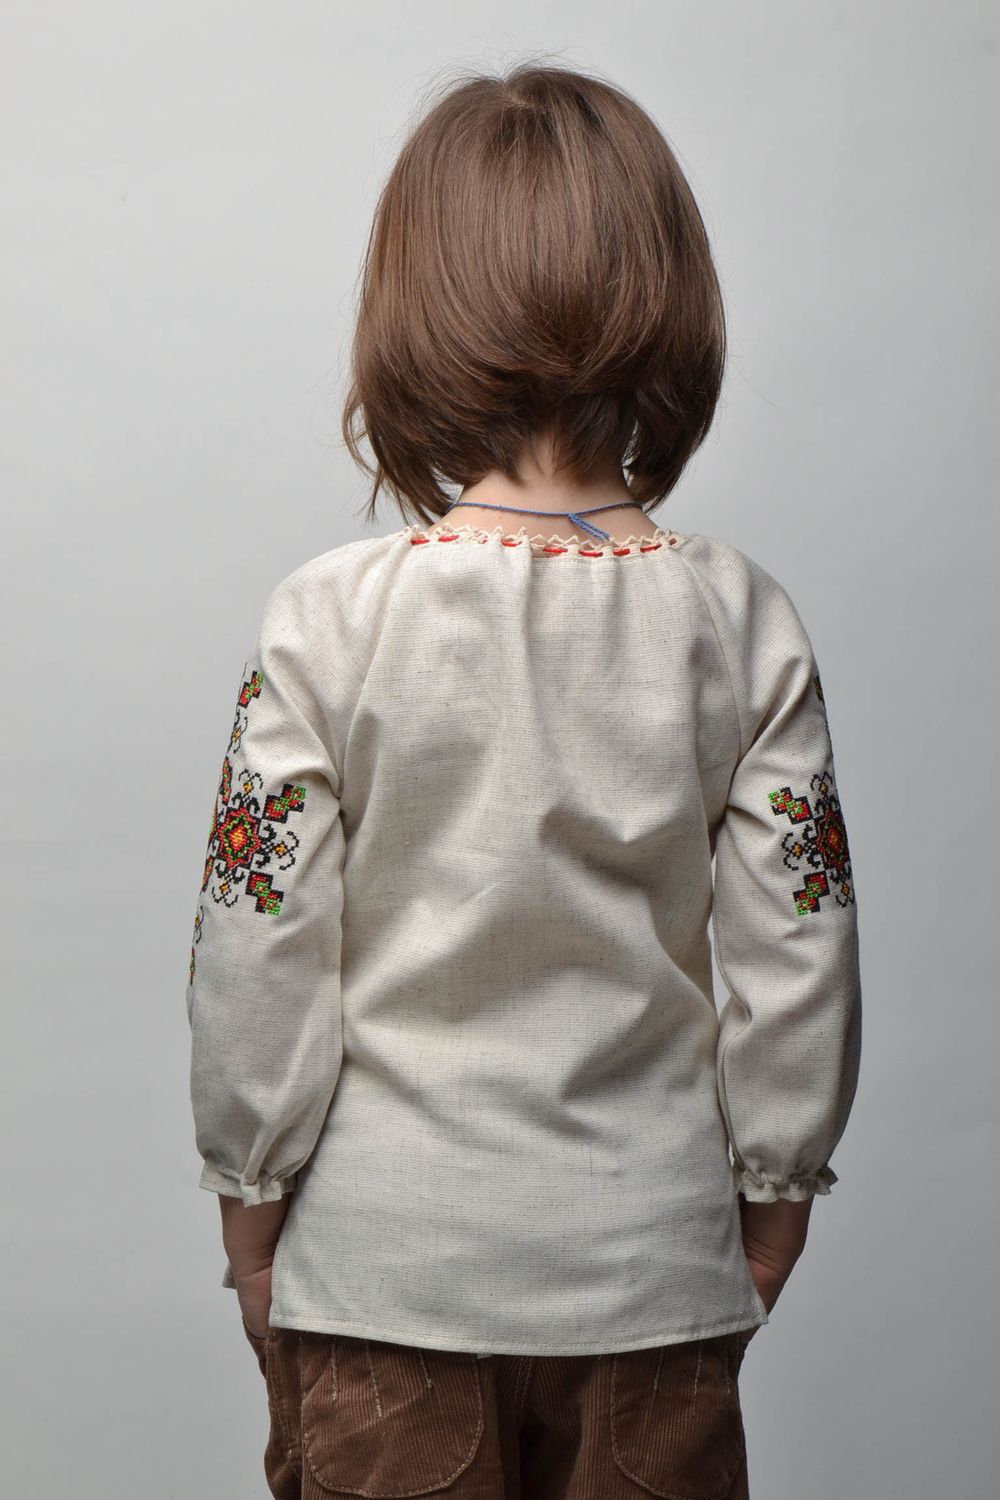 Camisa étnica bordada de manga larga para niña de 5-7 años de edad foto 4